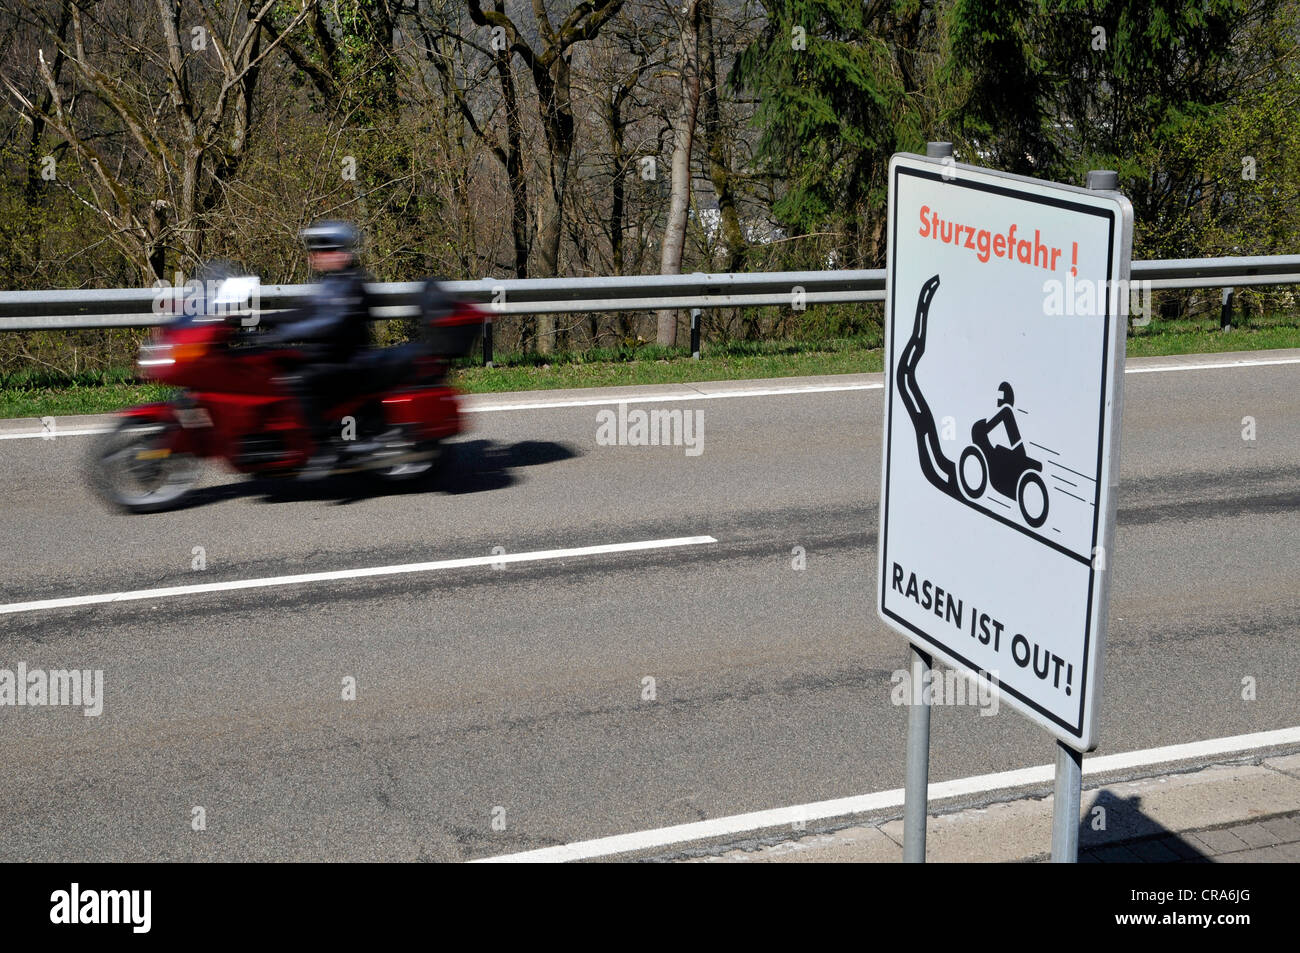 Motociclista sulla strada di un paese con un segnale di avvertimento, Sturzgefahr - Rasun ist, Tedesco per curve pericolose - assenza di accelerazione Foto Stock